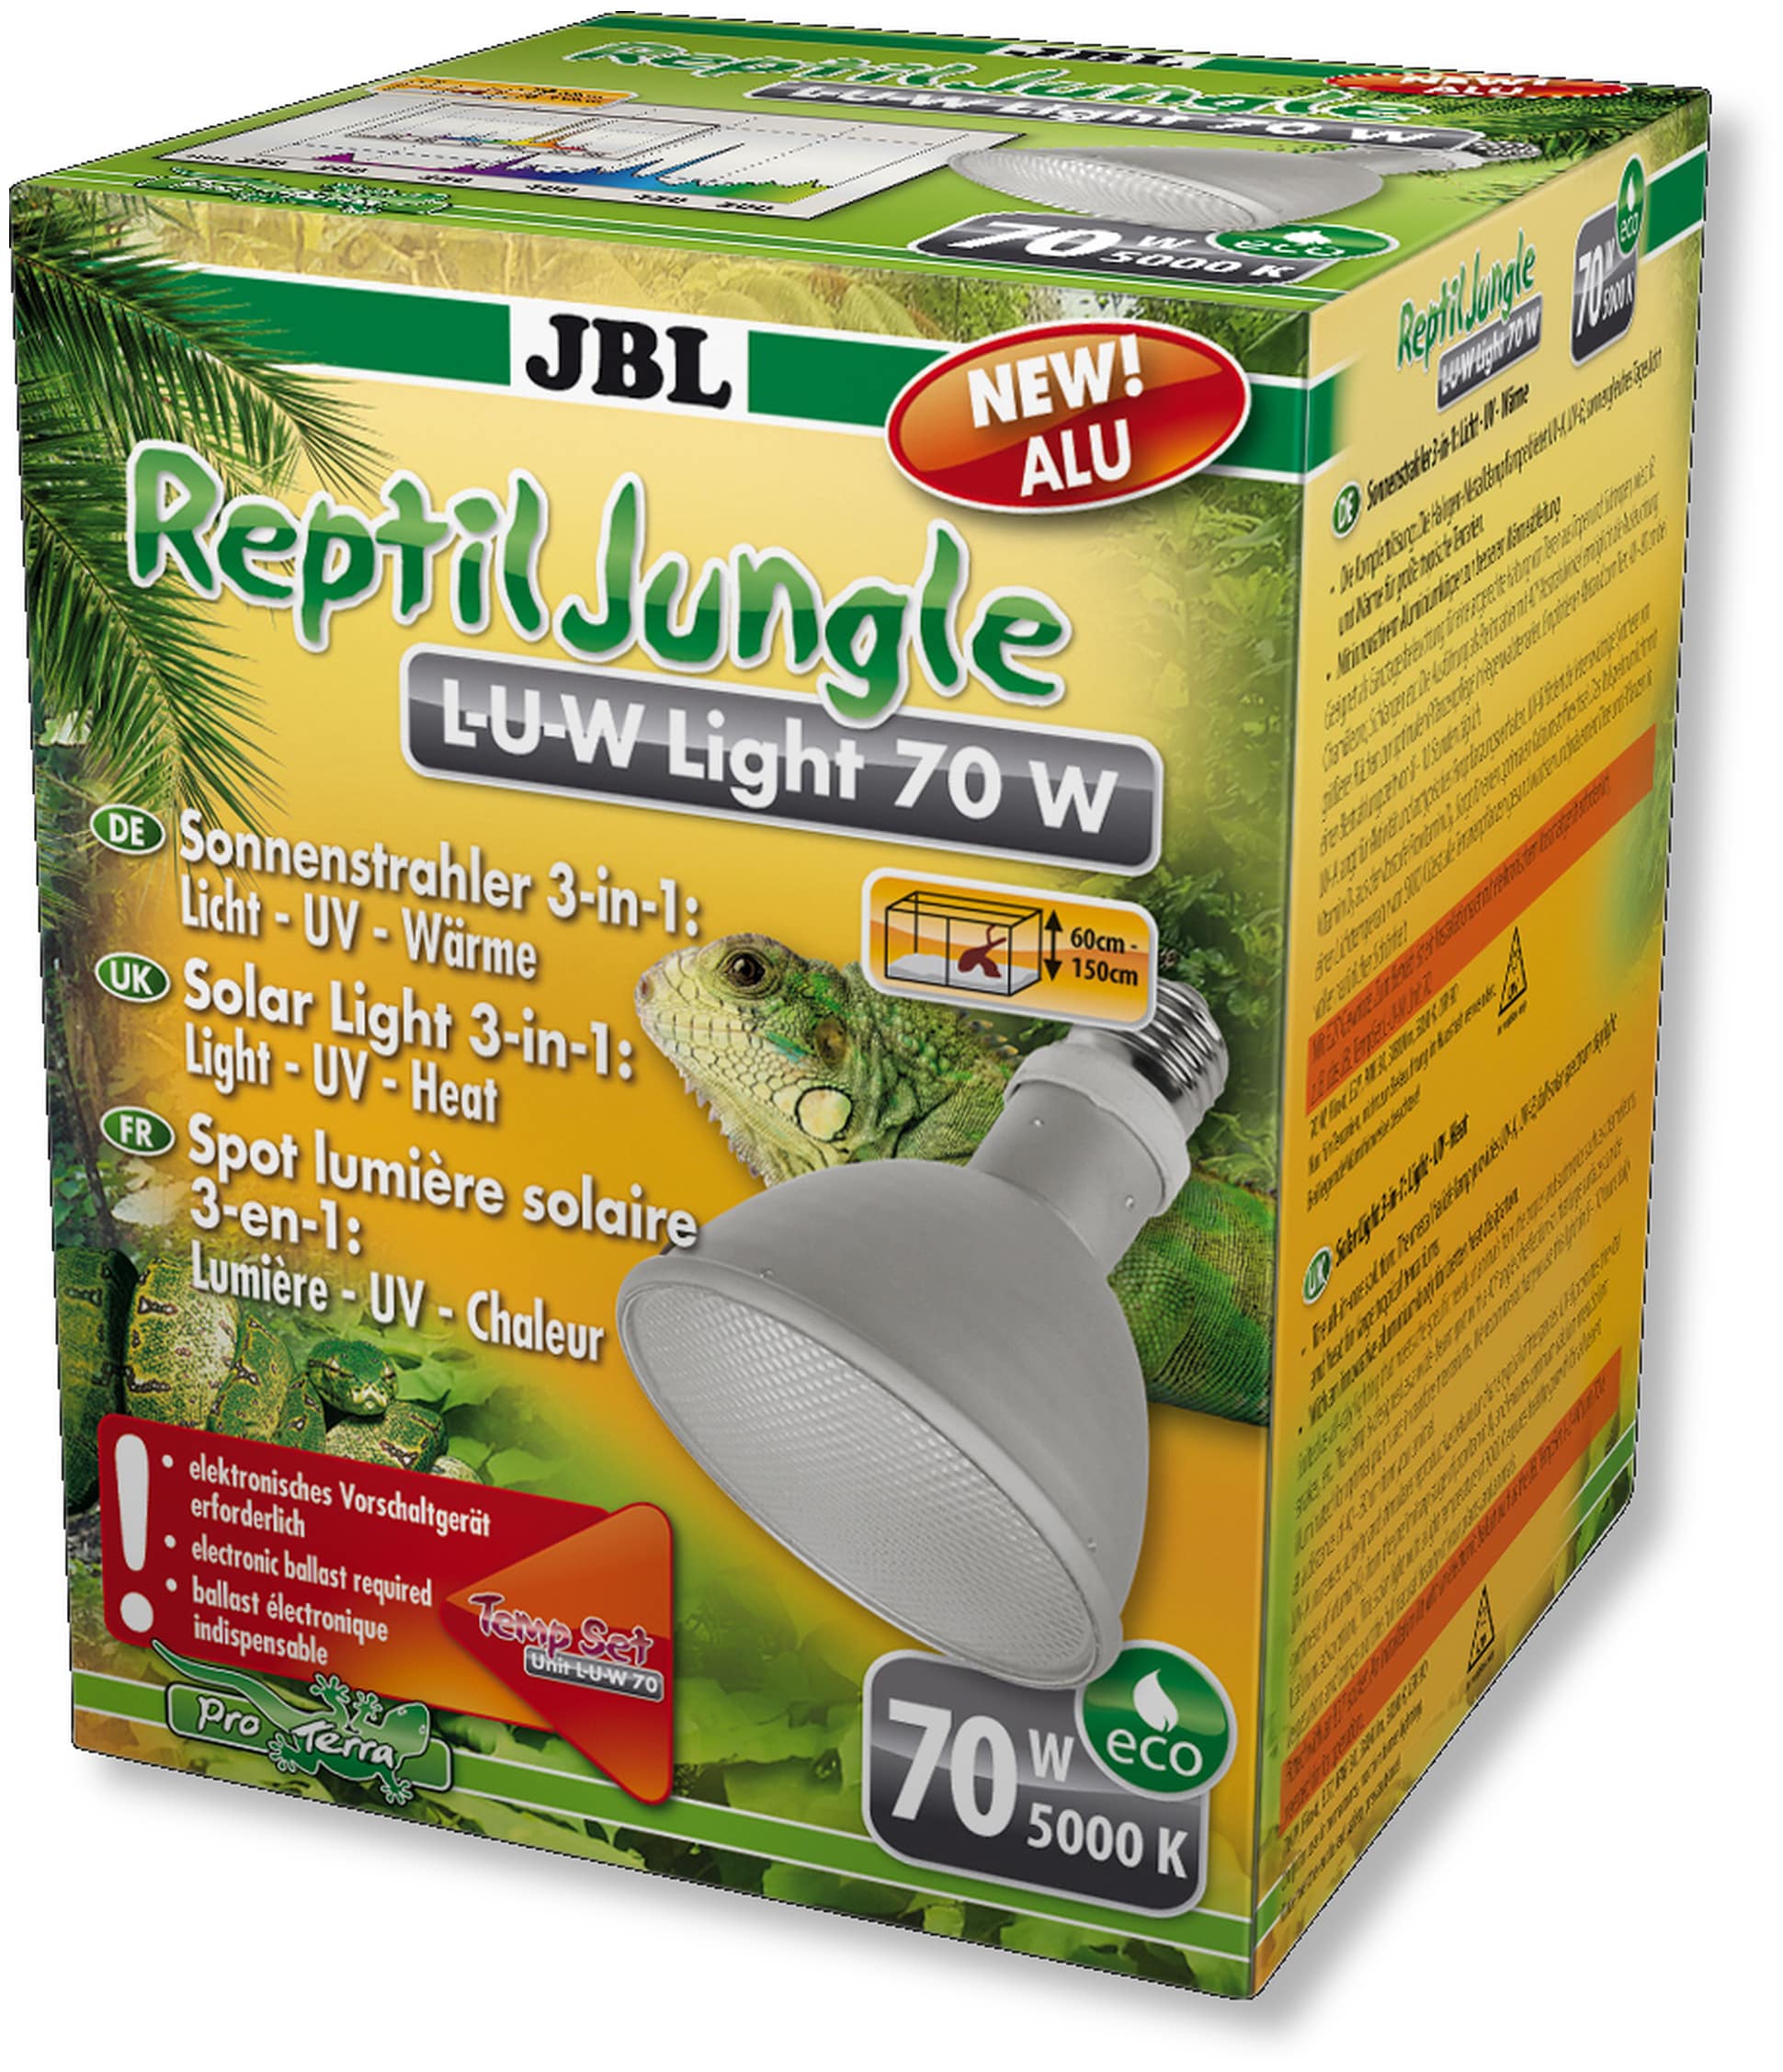 JBL ReptilJungle L-U-W Light alu 70W spot HQI en aluminium pour la reproduction du soleil en terrarium de type tropical